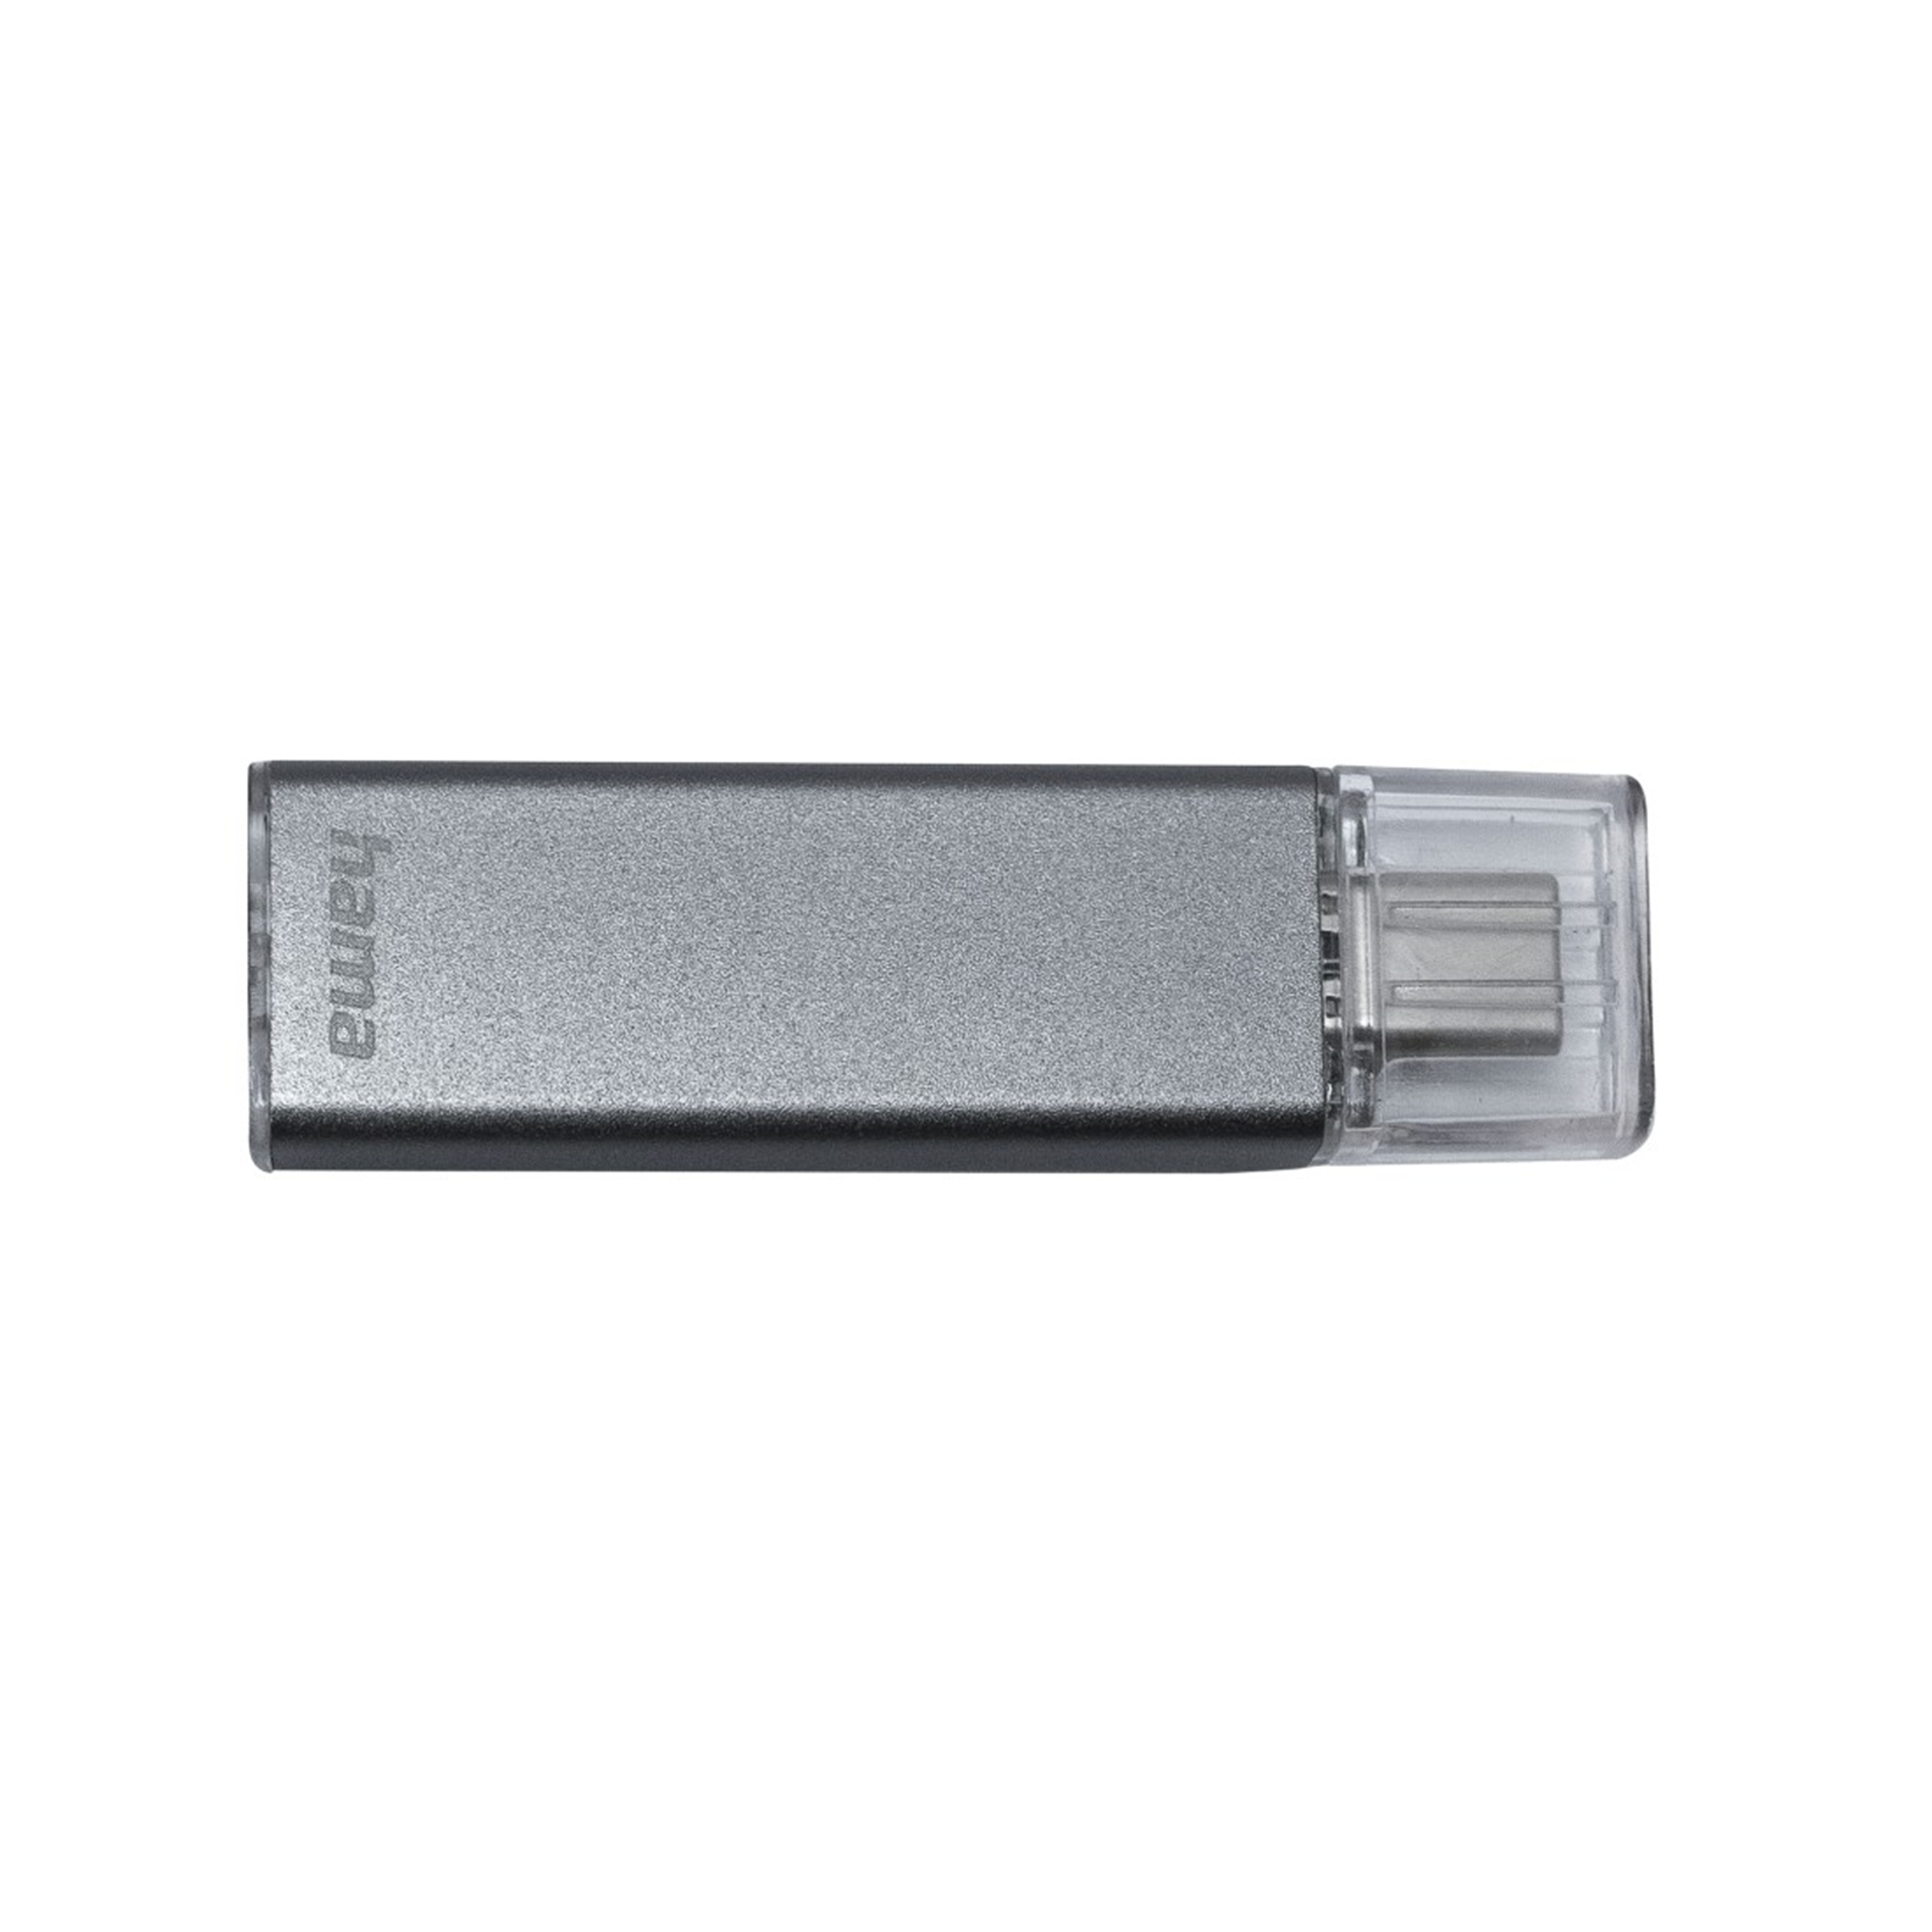 HAMA Uni-C Classic USB-Stick GB 128 GB) 128 (Anthrazit